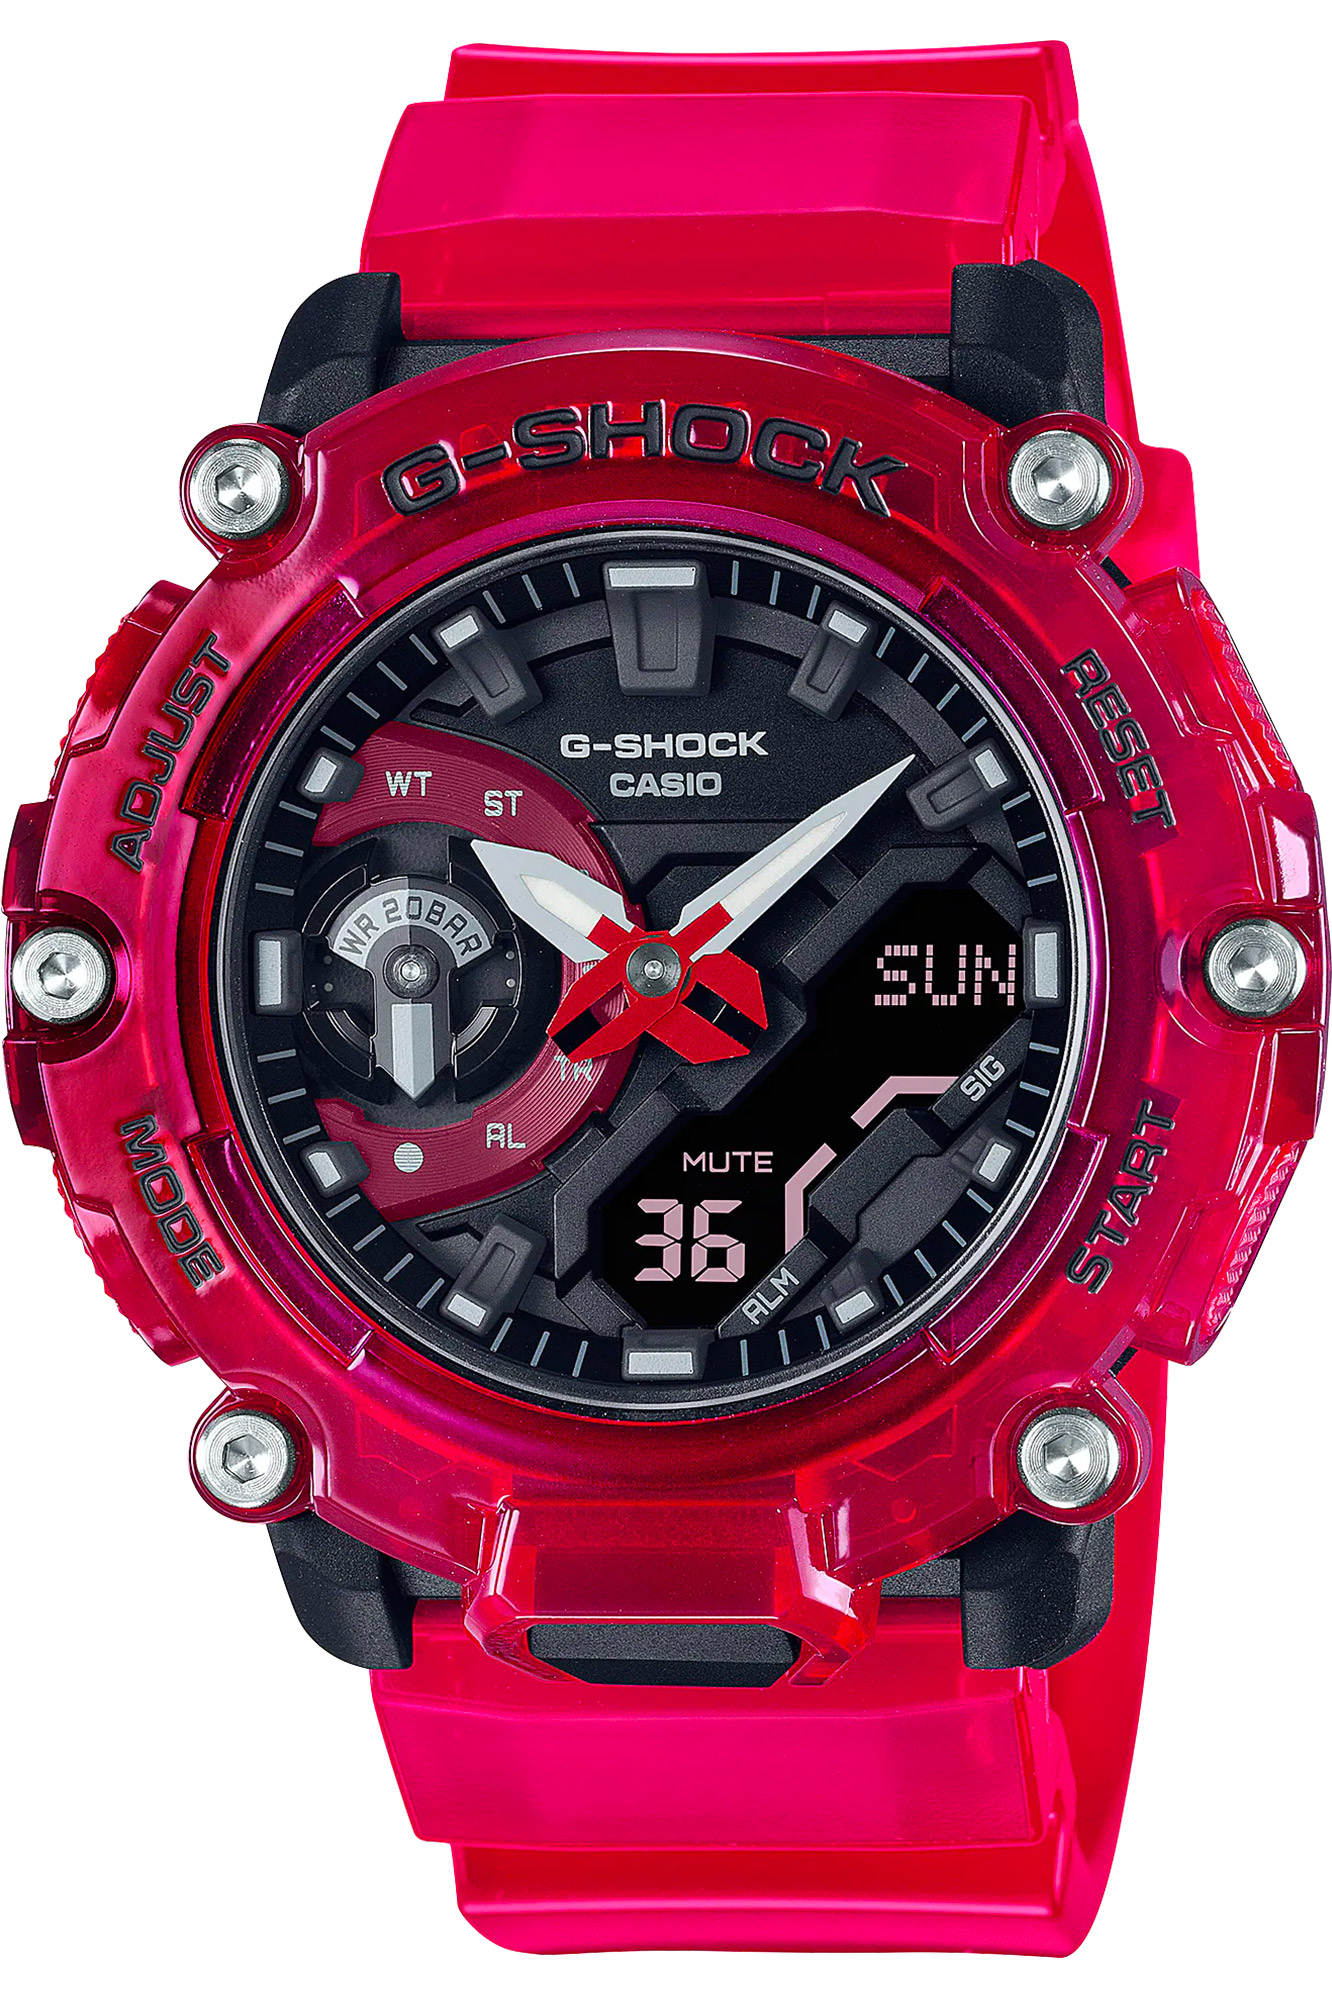 Watch CASIO G-Shock ga-2200skl-4aer